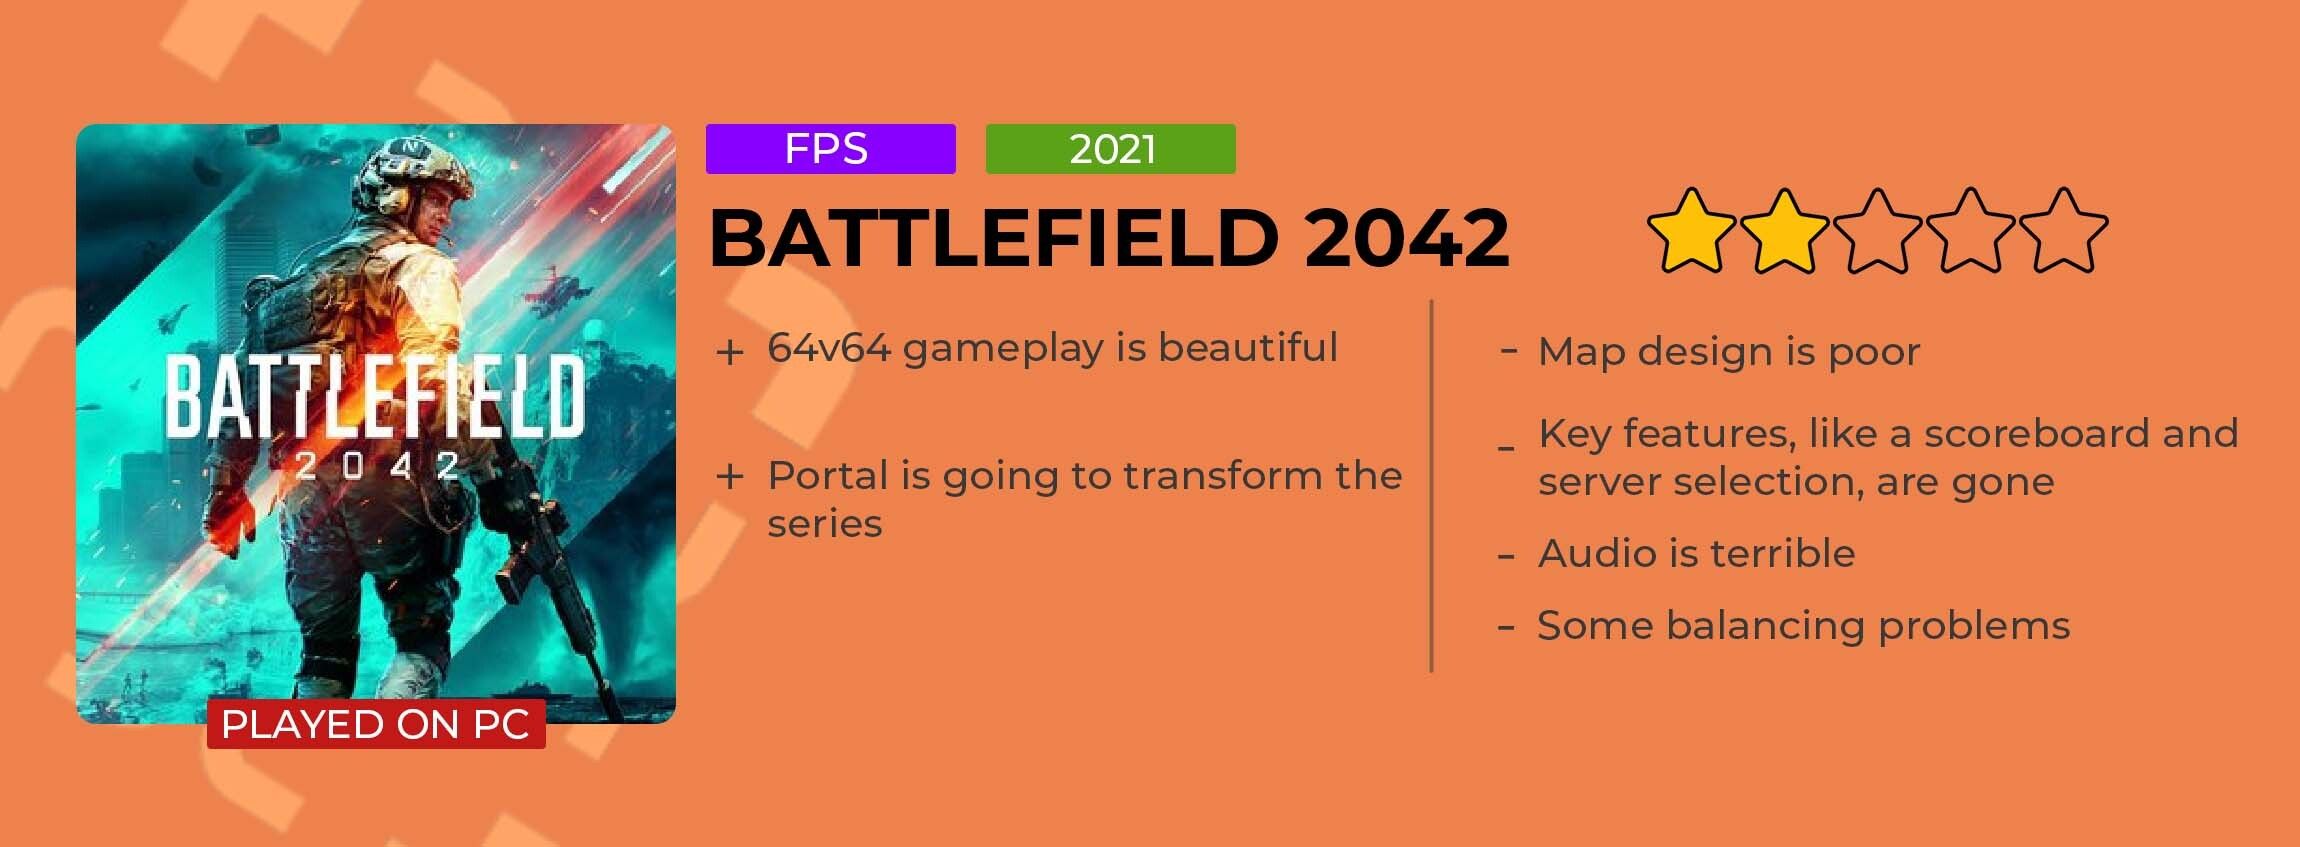 battlefield_2042_review_card